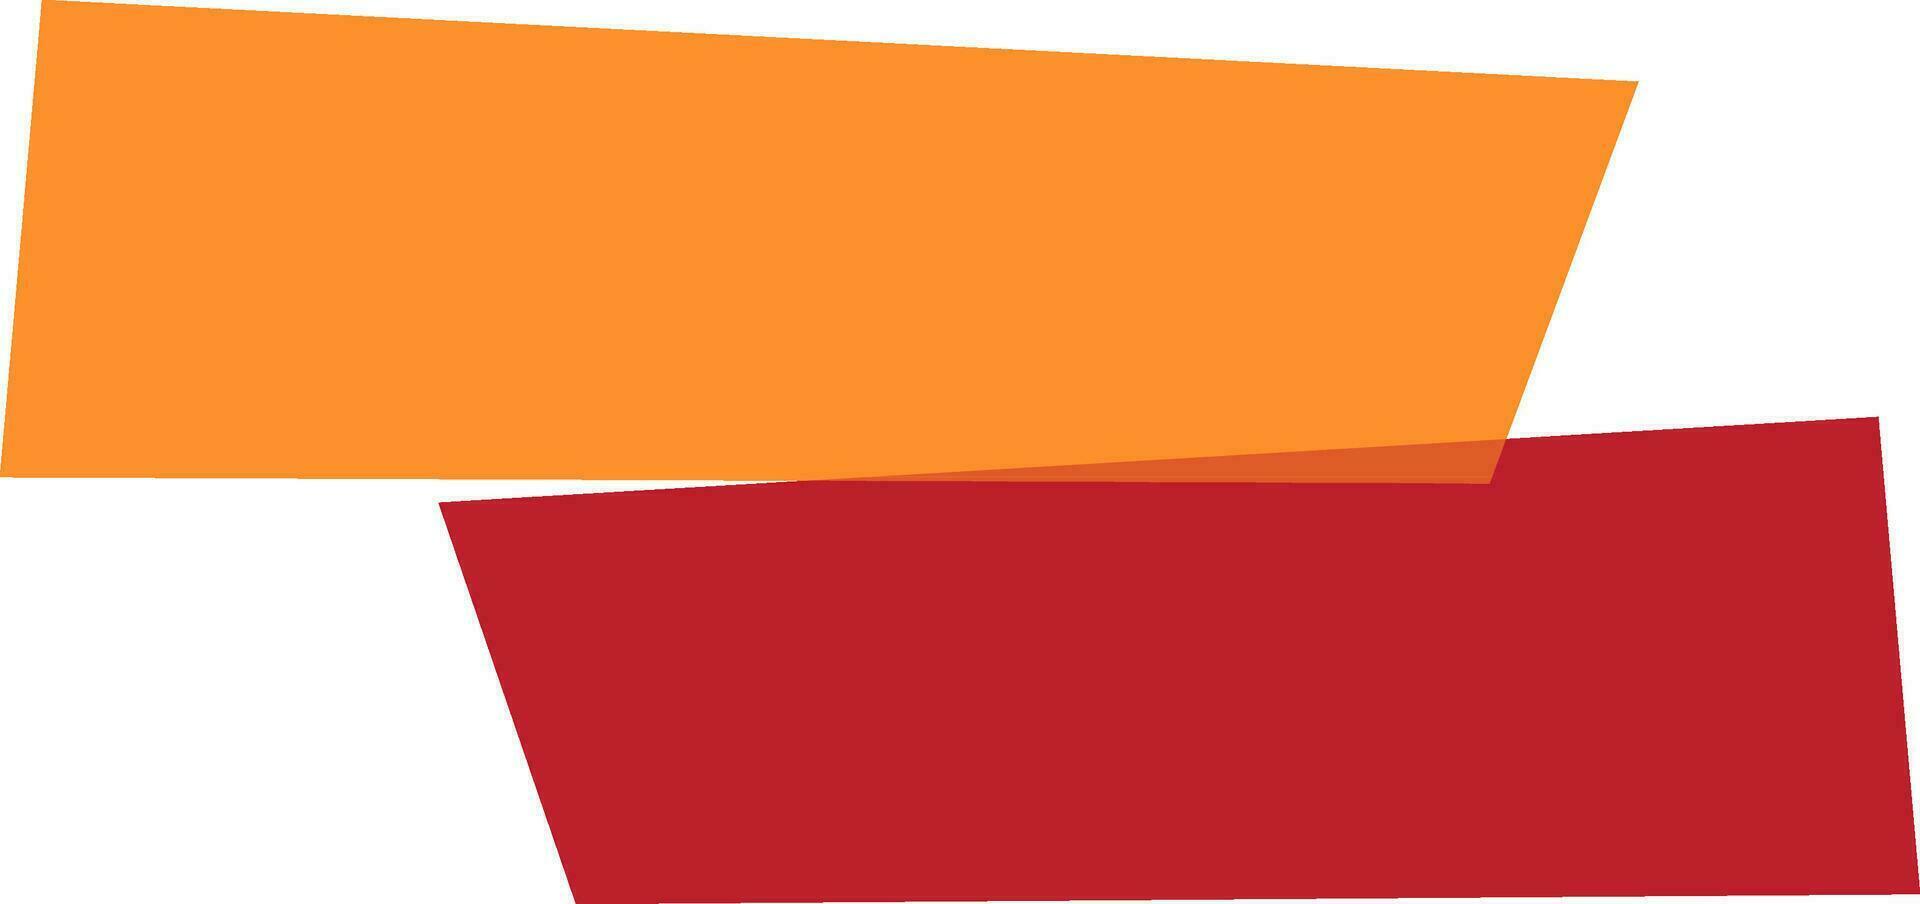 oranje en rood papier banier ontwerp. vector